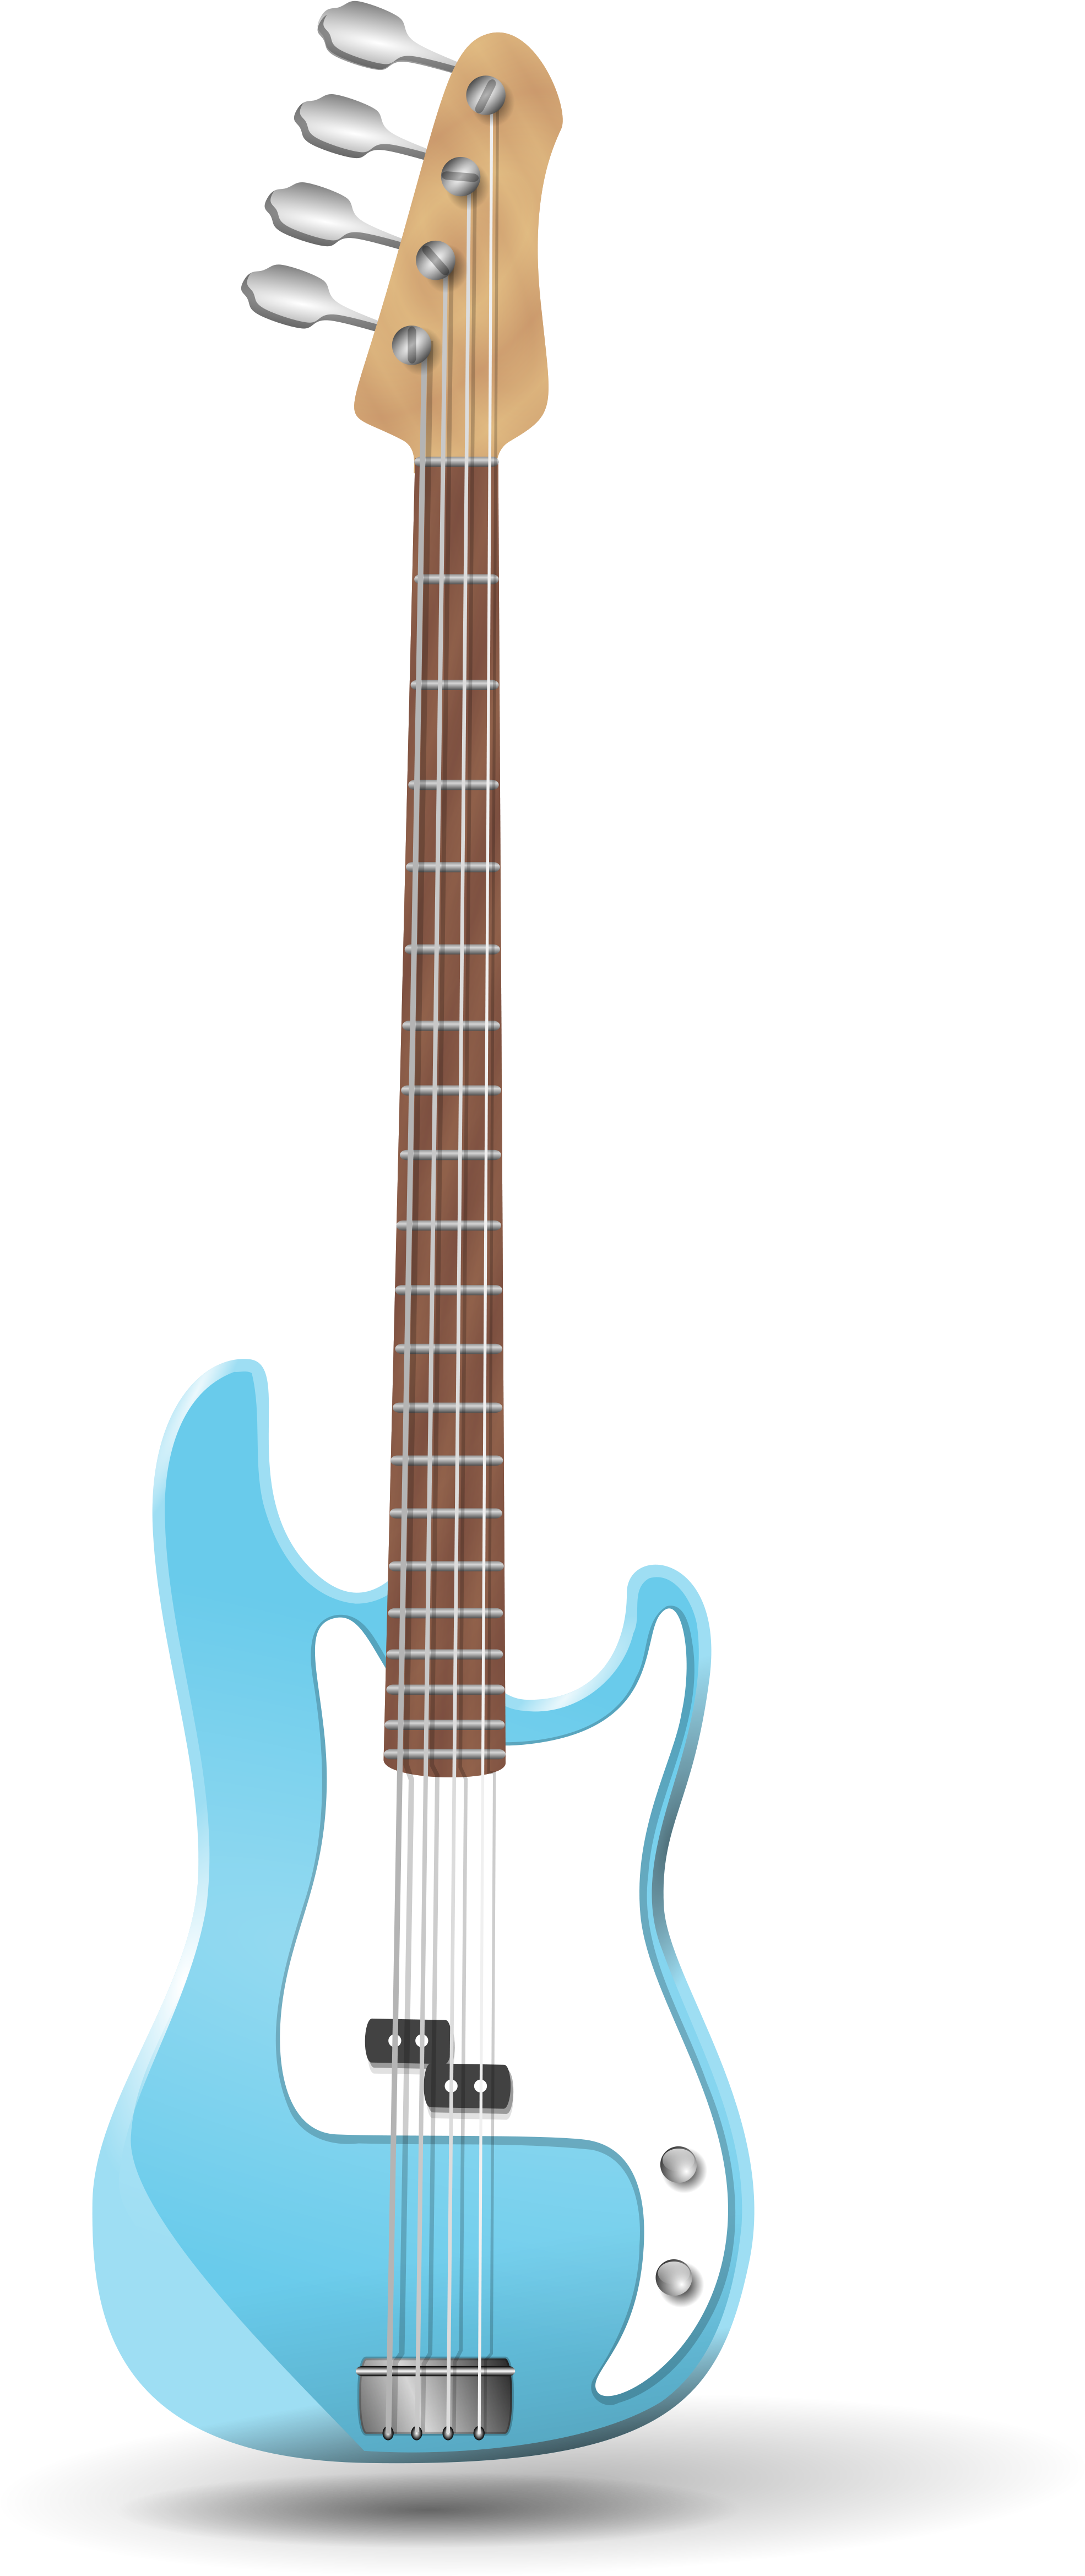 Clipart Guitar Bass Guitar - Transparent Background Bass Guitar Clip Art Jpeg (2000x4800), Png Download